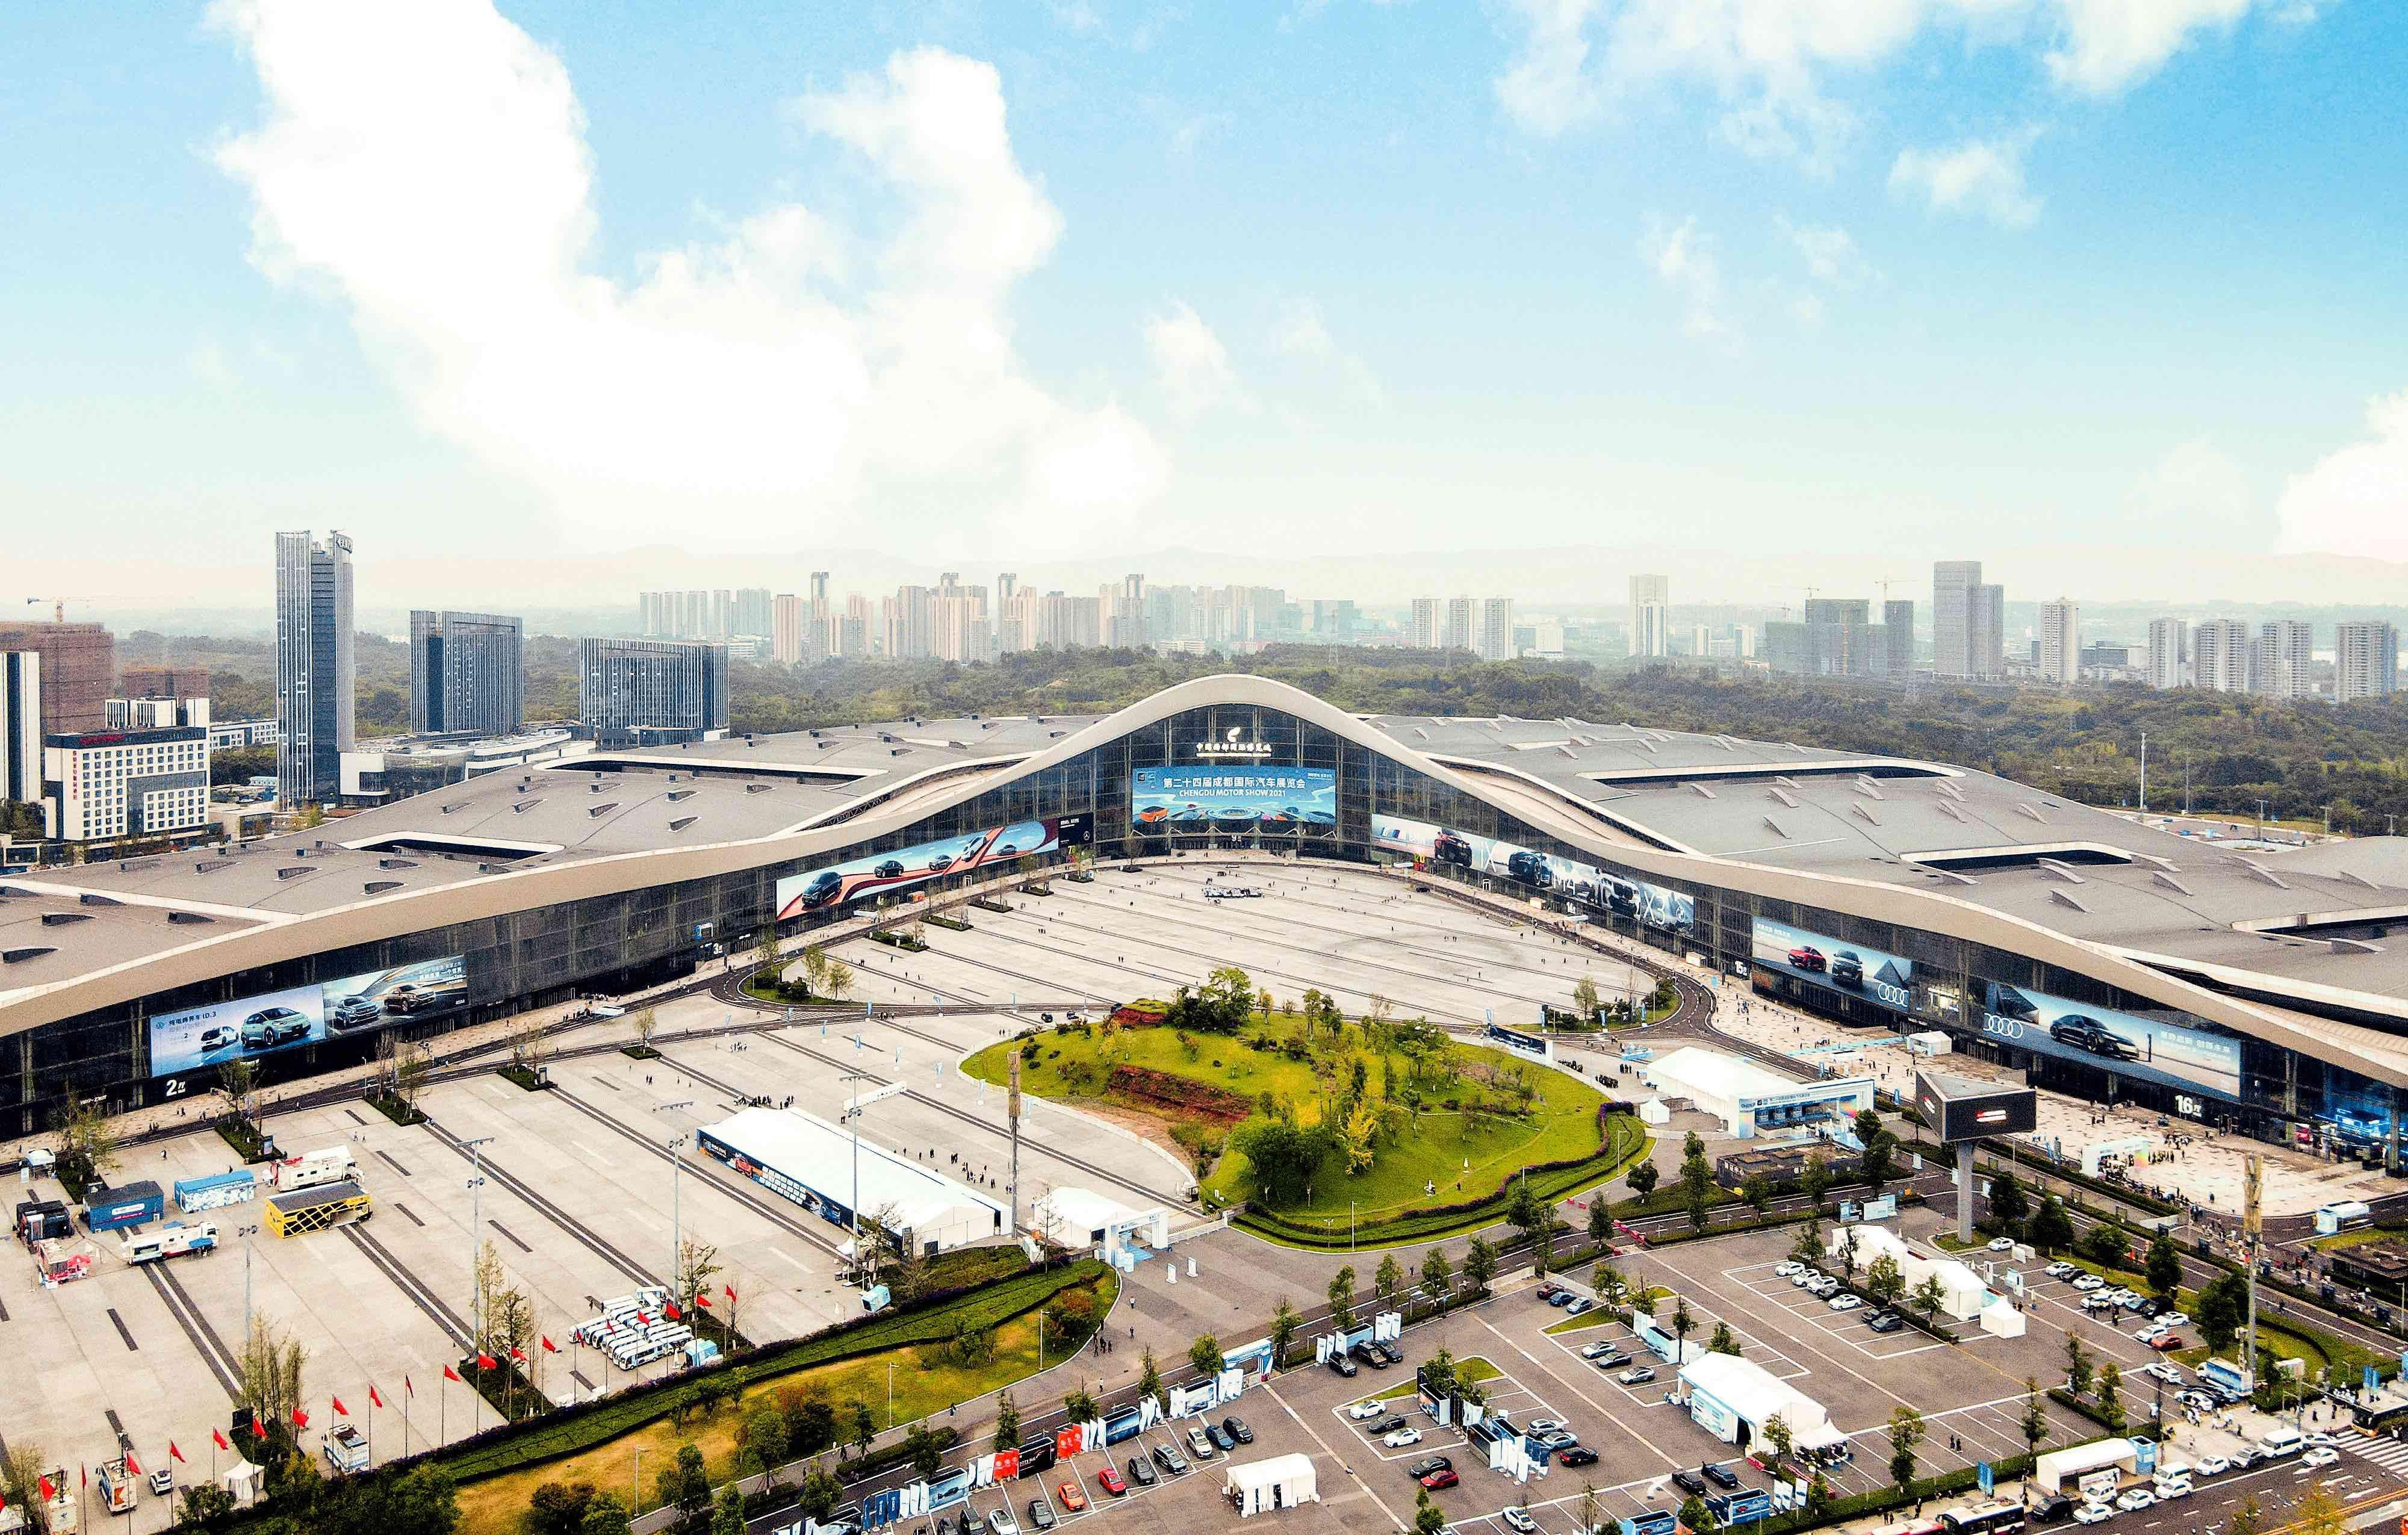 2022成都国际汽车展览会8月26日开幕